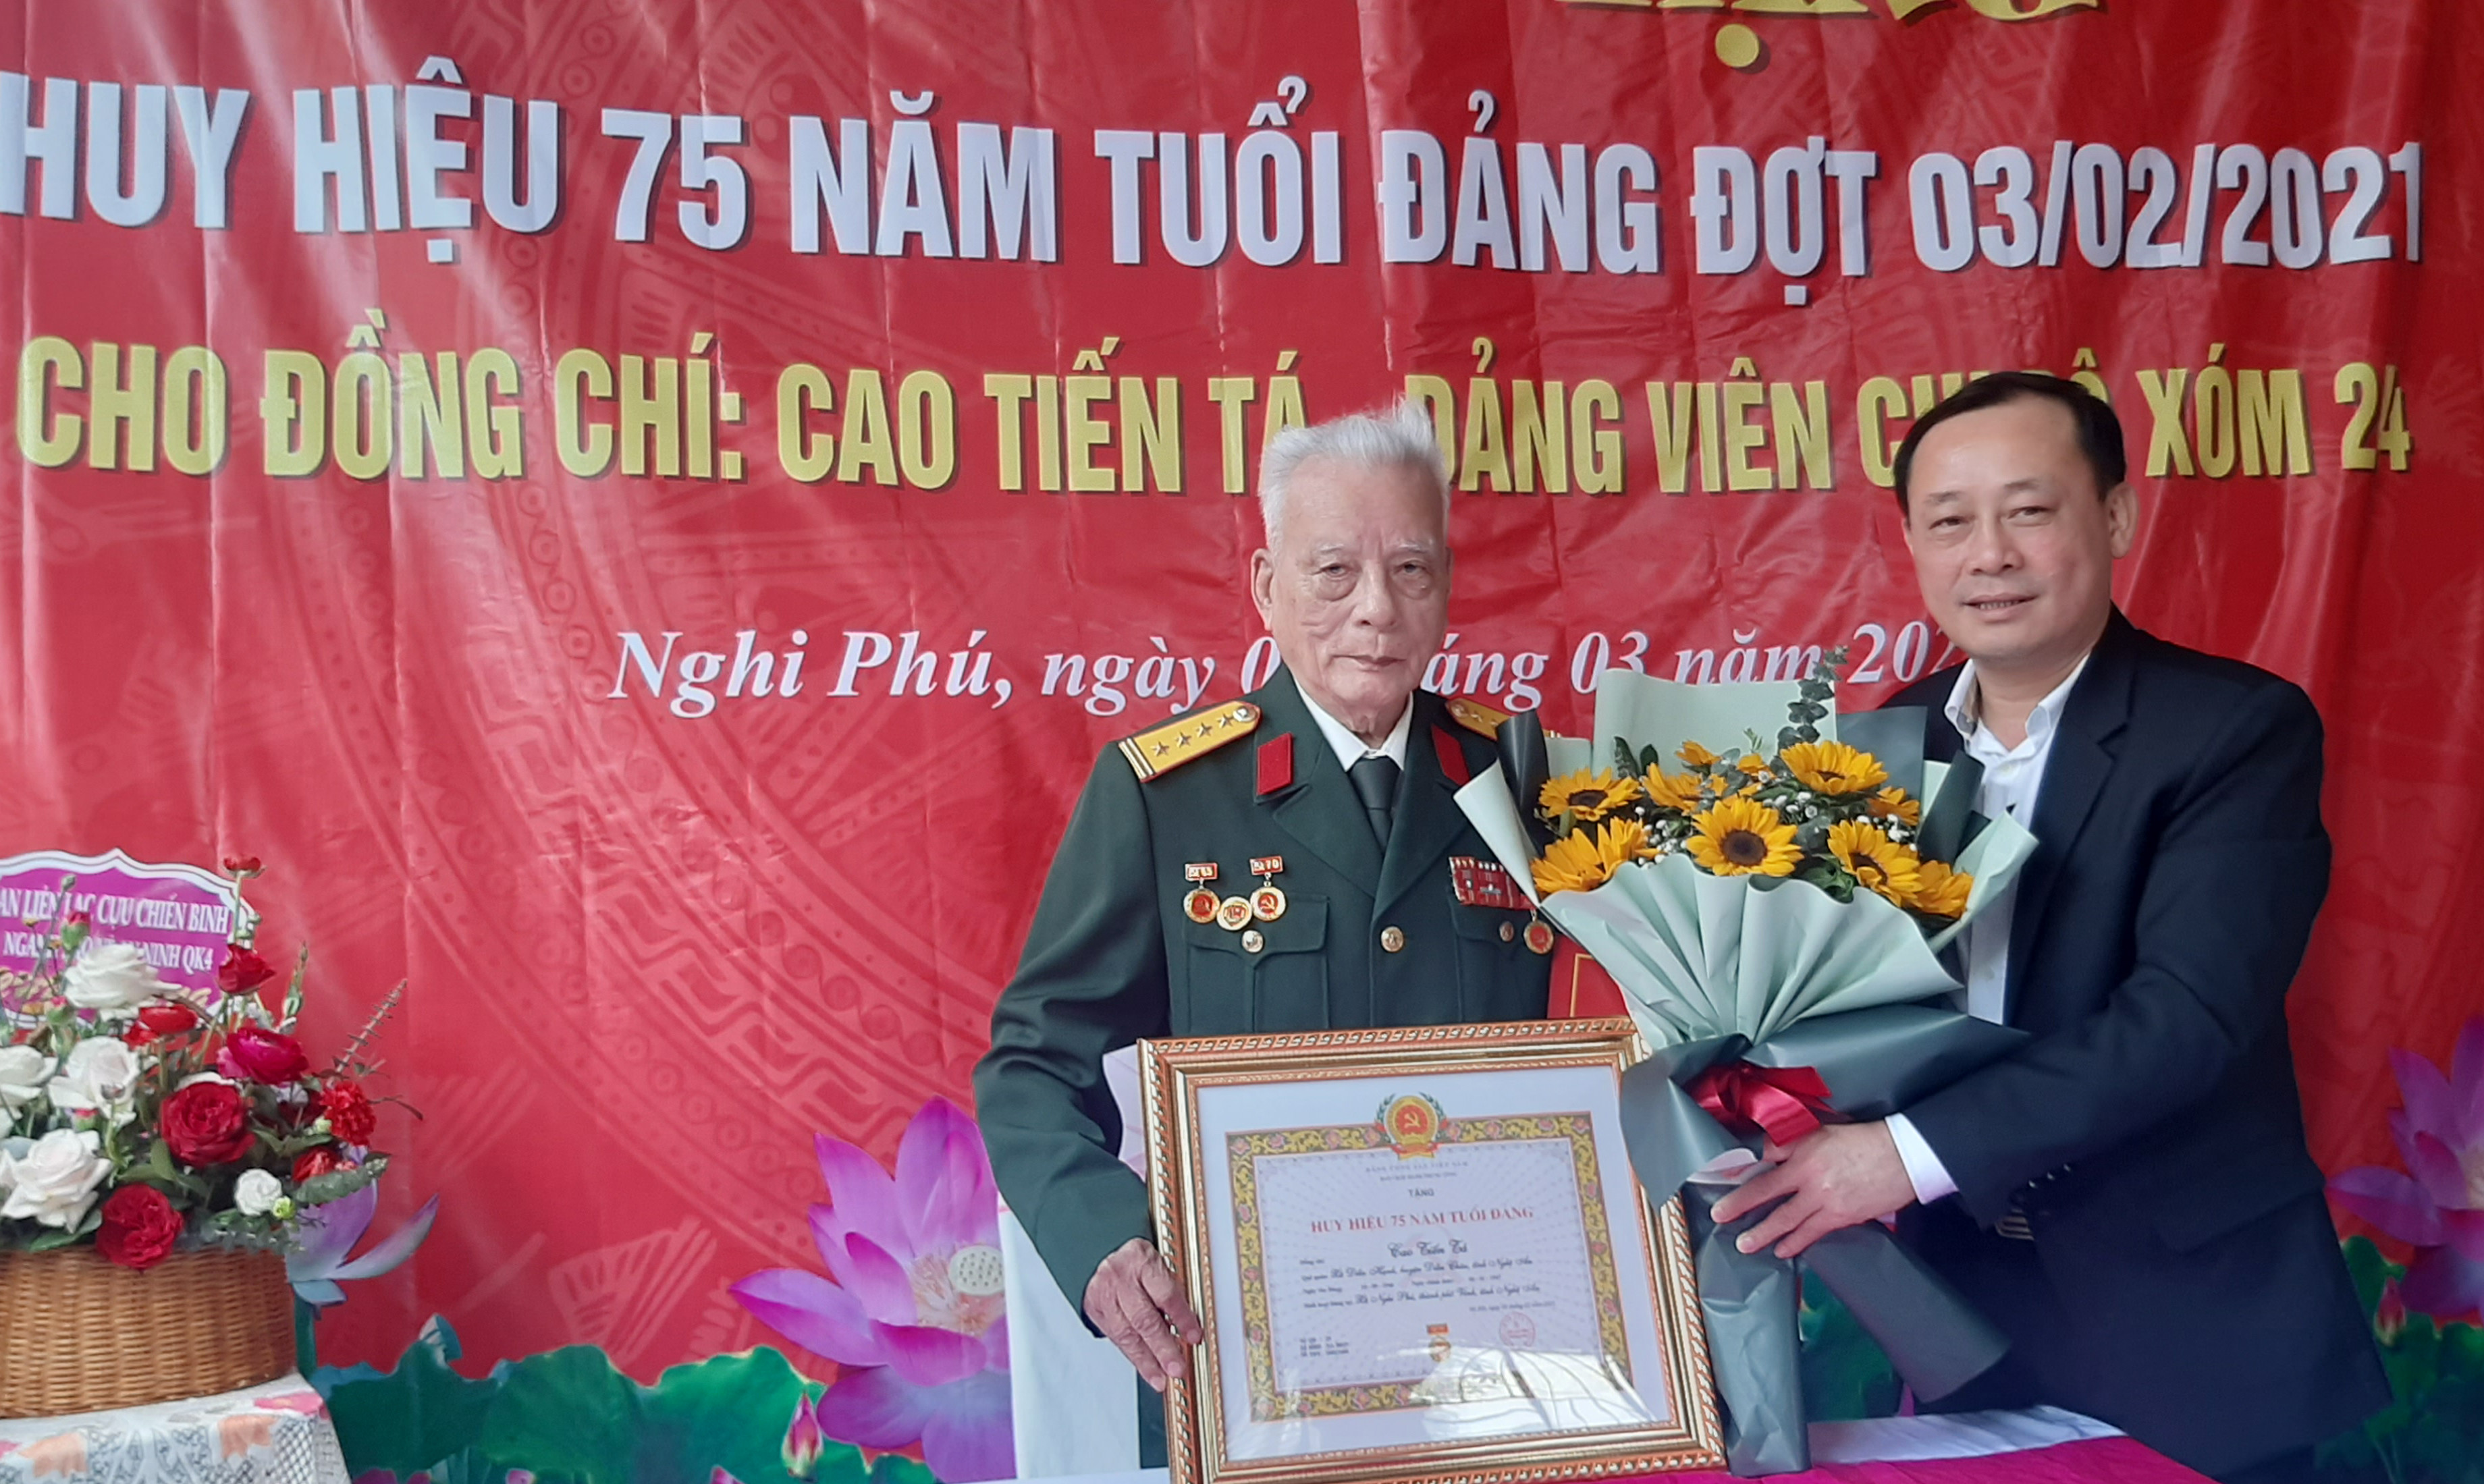 Đồng chí Phan Đức Đồng trao huy hiệu 75 năm tuổi Đảng cho Đảng viên Cao Tiến Tá, chi bộ xóm 24 xã Nghi Phú thành phố Vinh